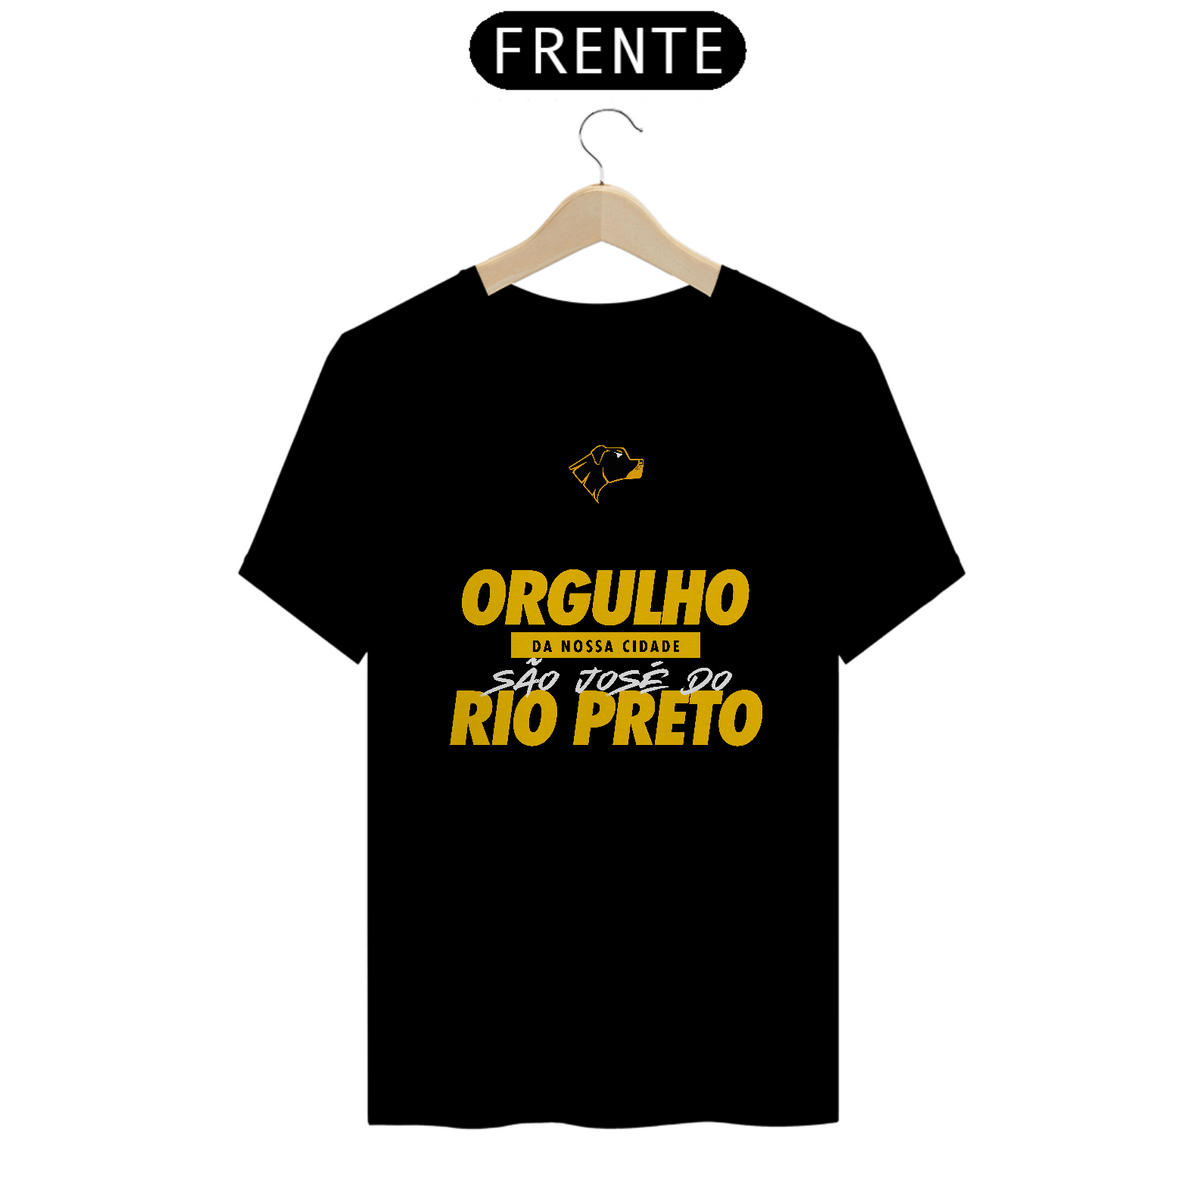 Nome do produto: Orgulho Rio Preto 